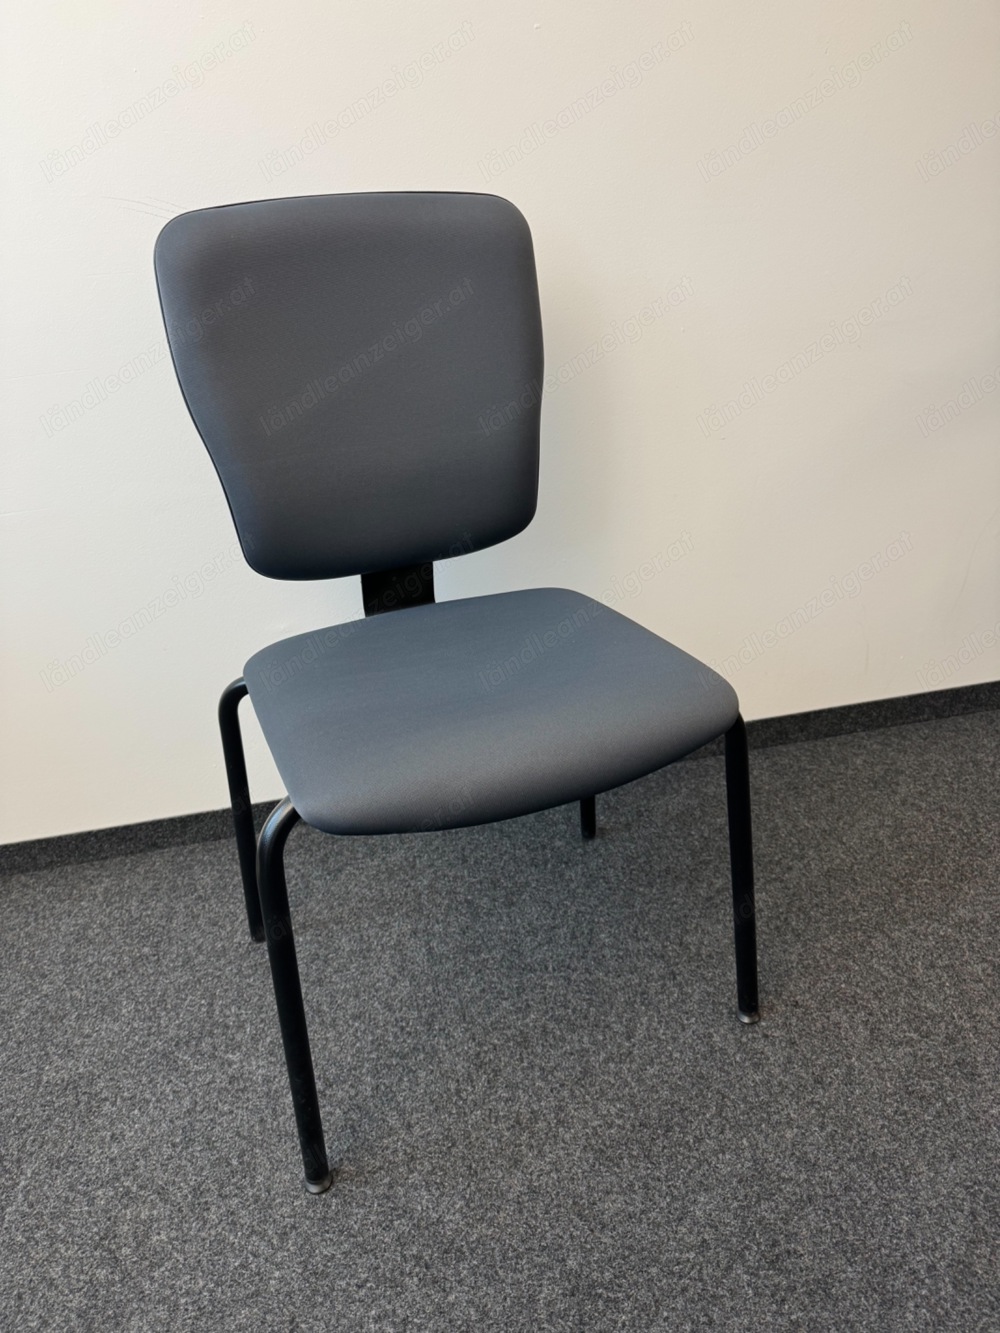 3 Sessel für Büro oder Esszimmer, auch einzeln verkäuflich 